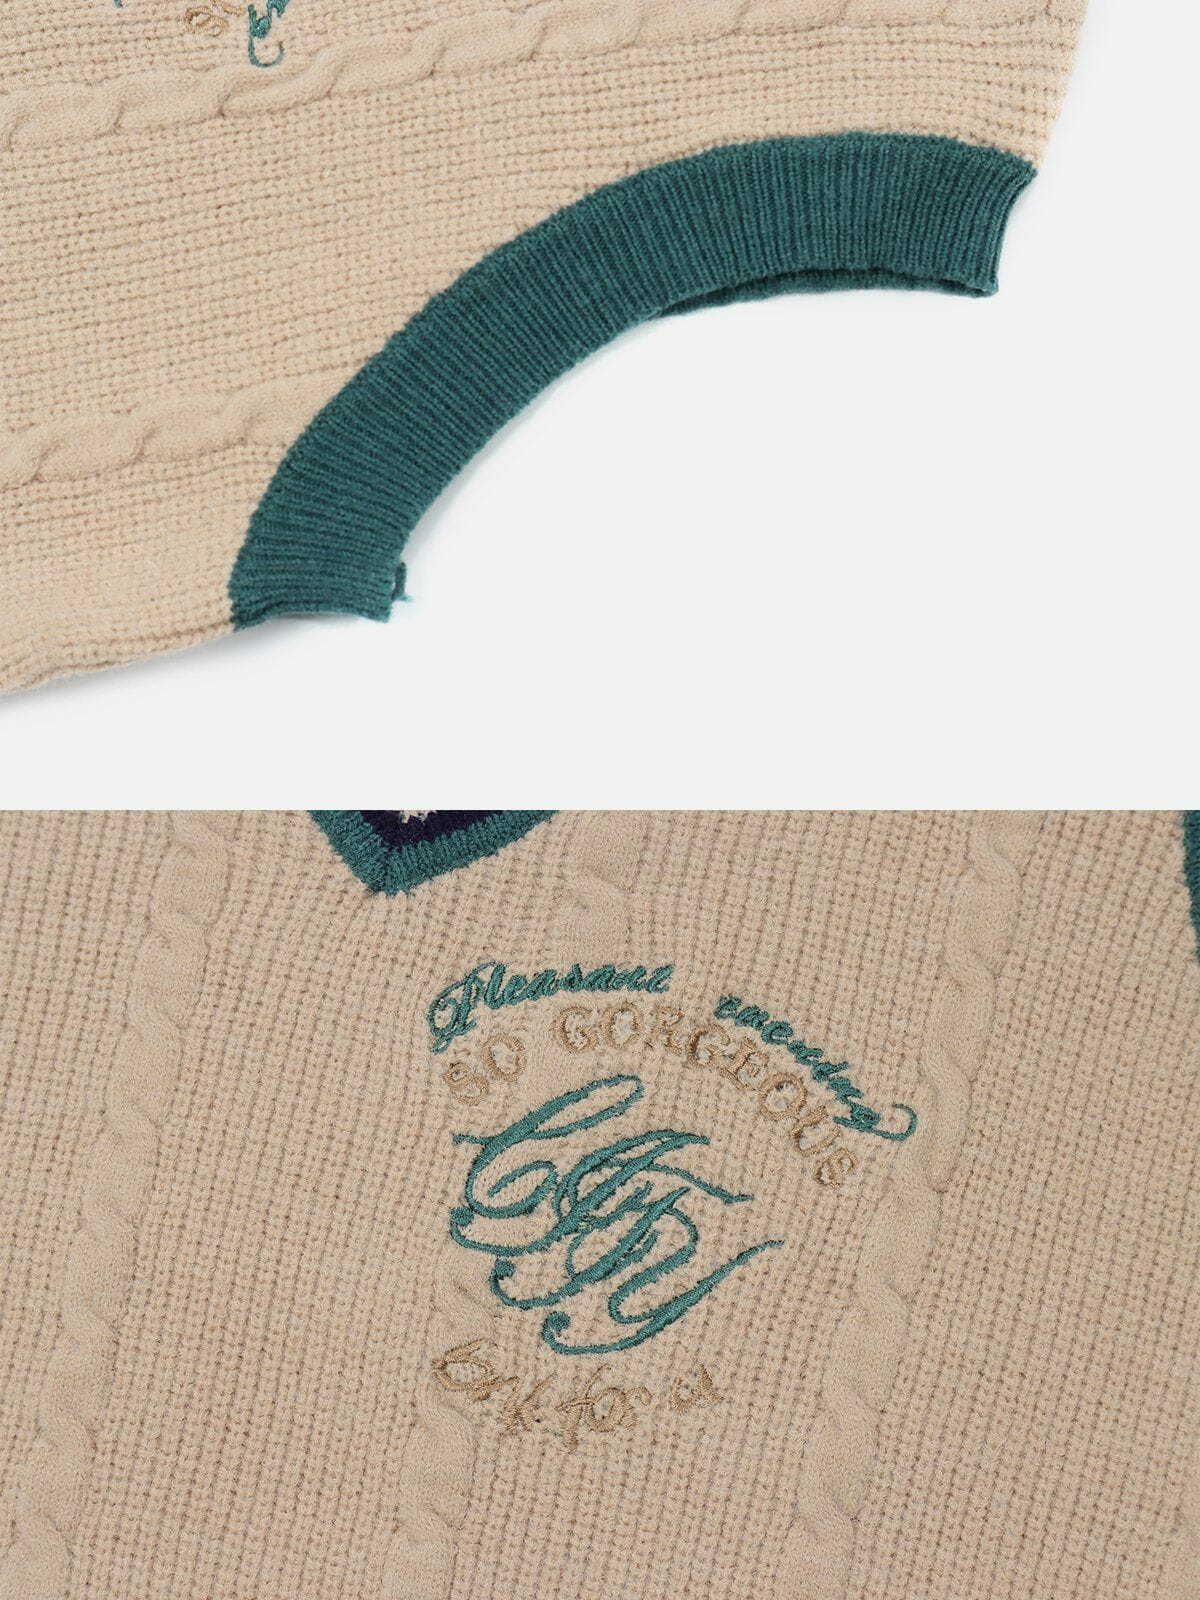 embroidered patchwork sweater vest urban fashion statement 6342